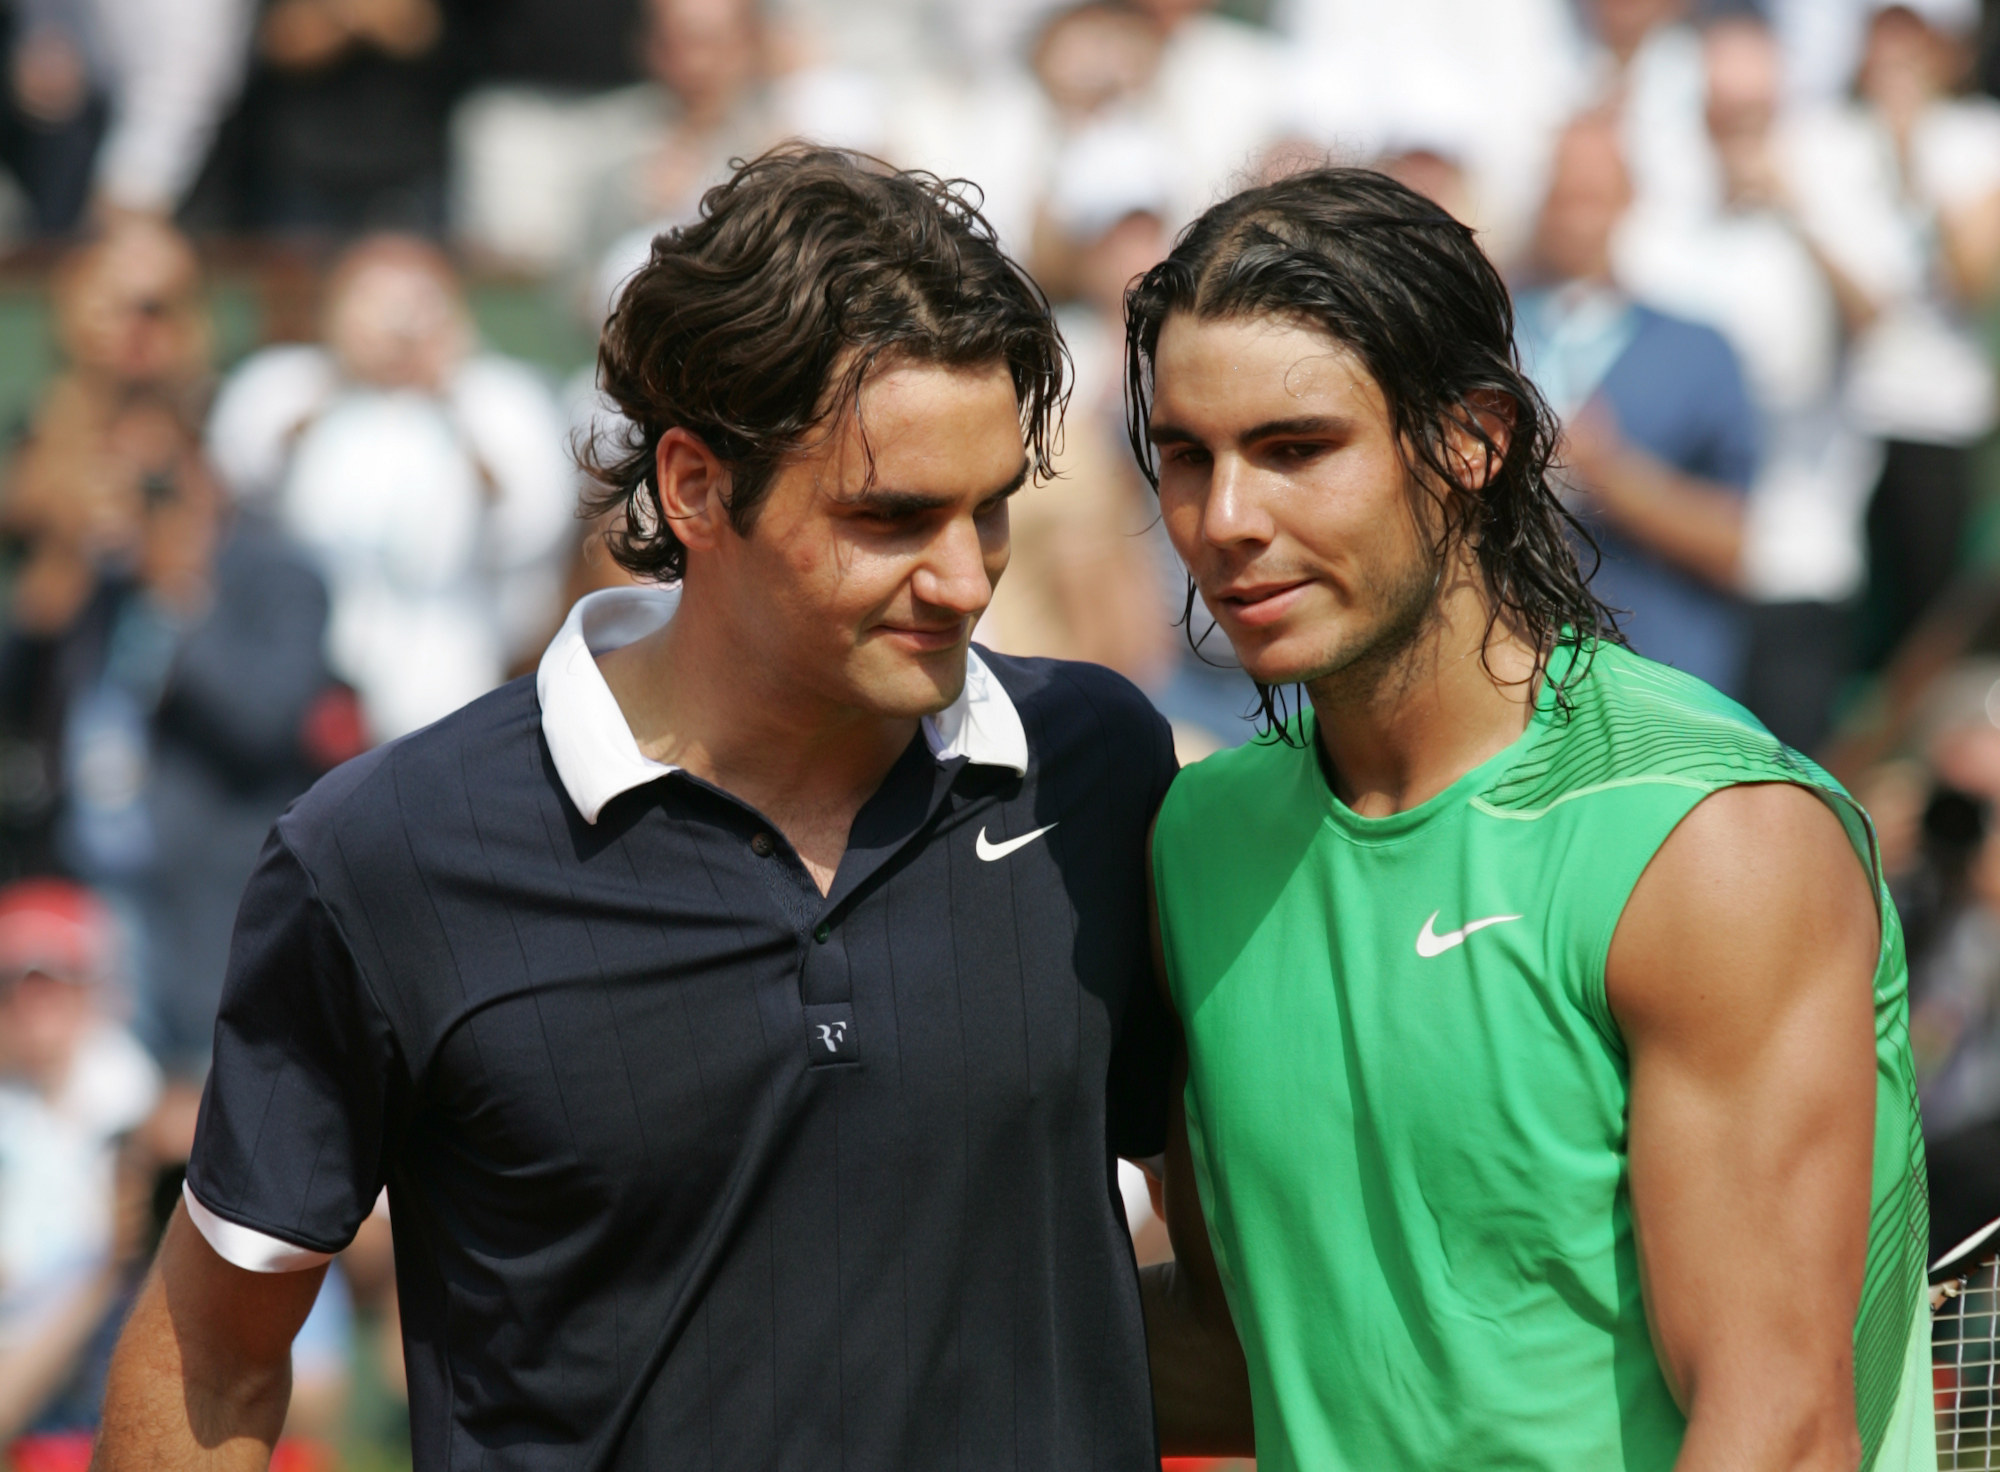 Rafa Nadal & Roger Federer: A Grand Slam rivalry